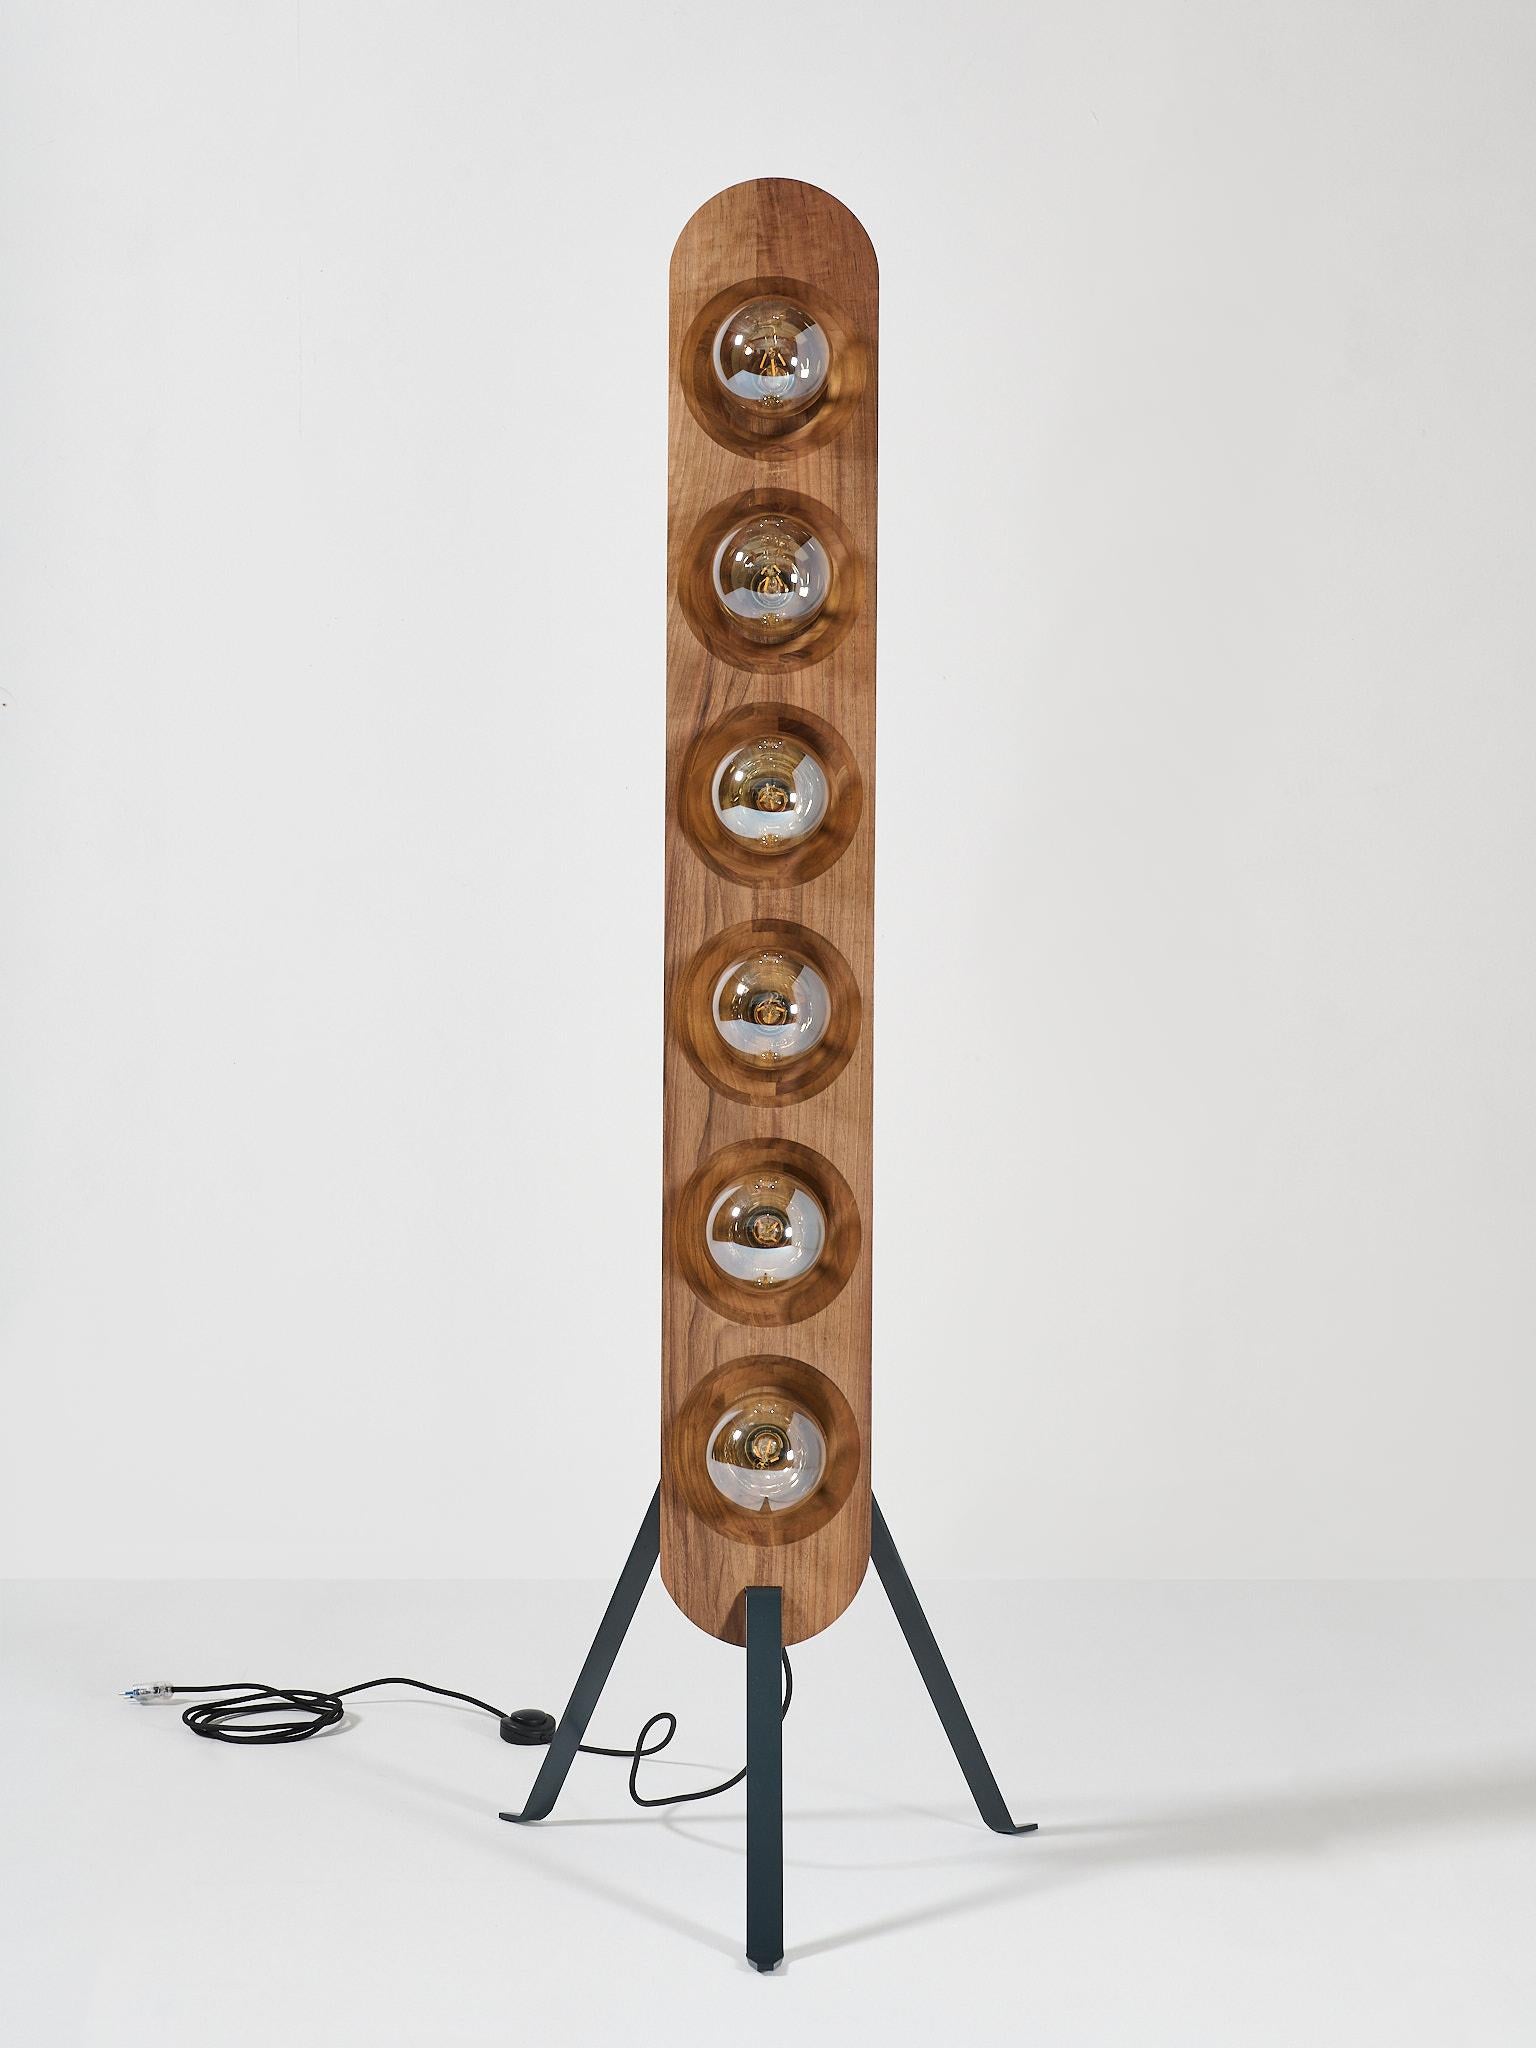 La lampe Relife porte un nom symbolique car, à un objet ancien, dans lequel on pétrissait le pain et qu'on laissait lever, on insufflait ce qu'on appelle la 